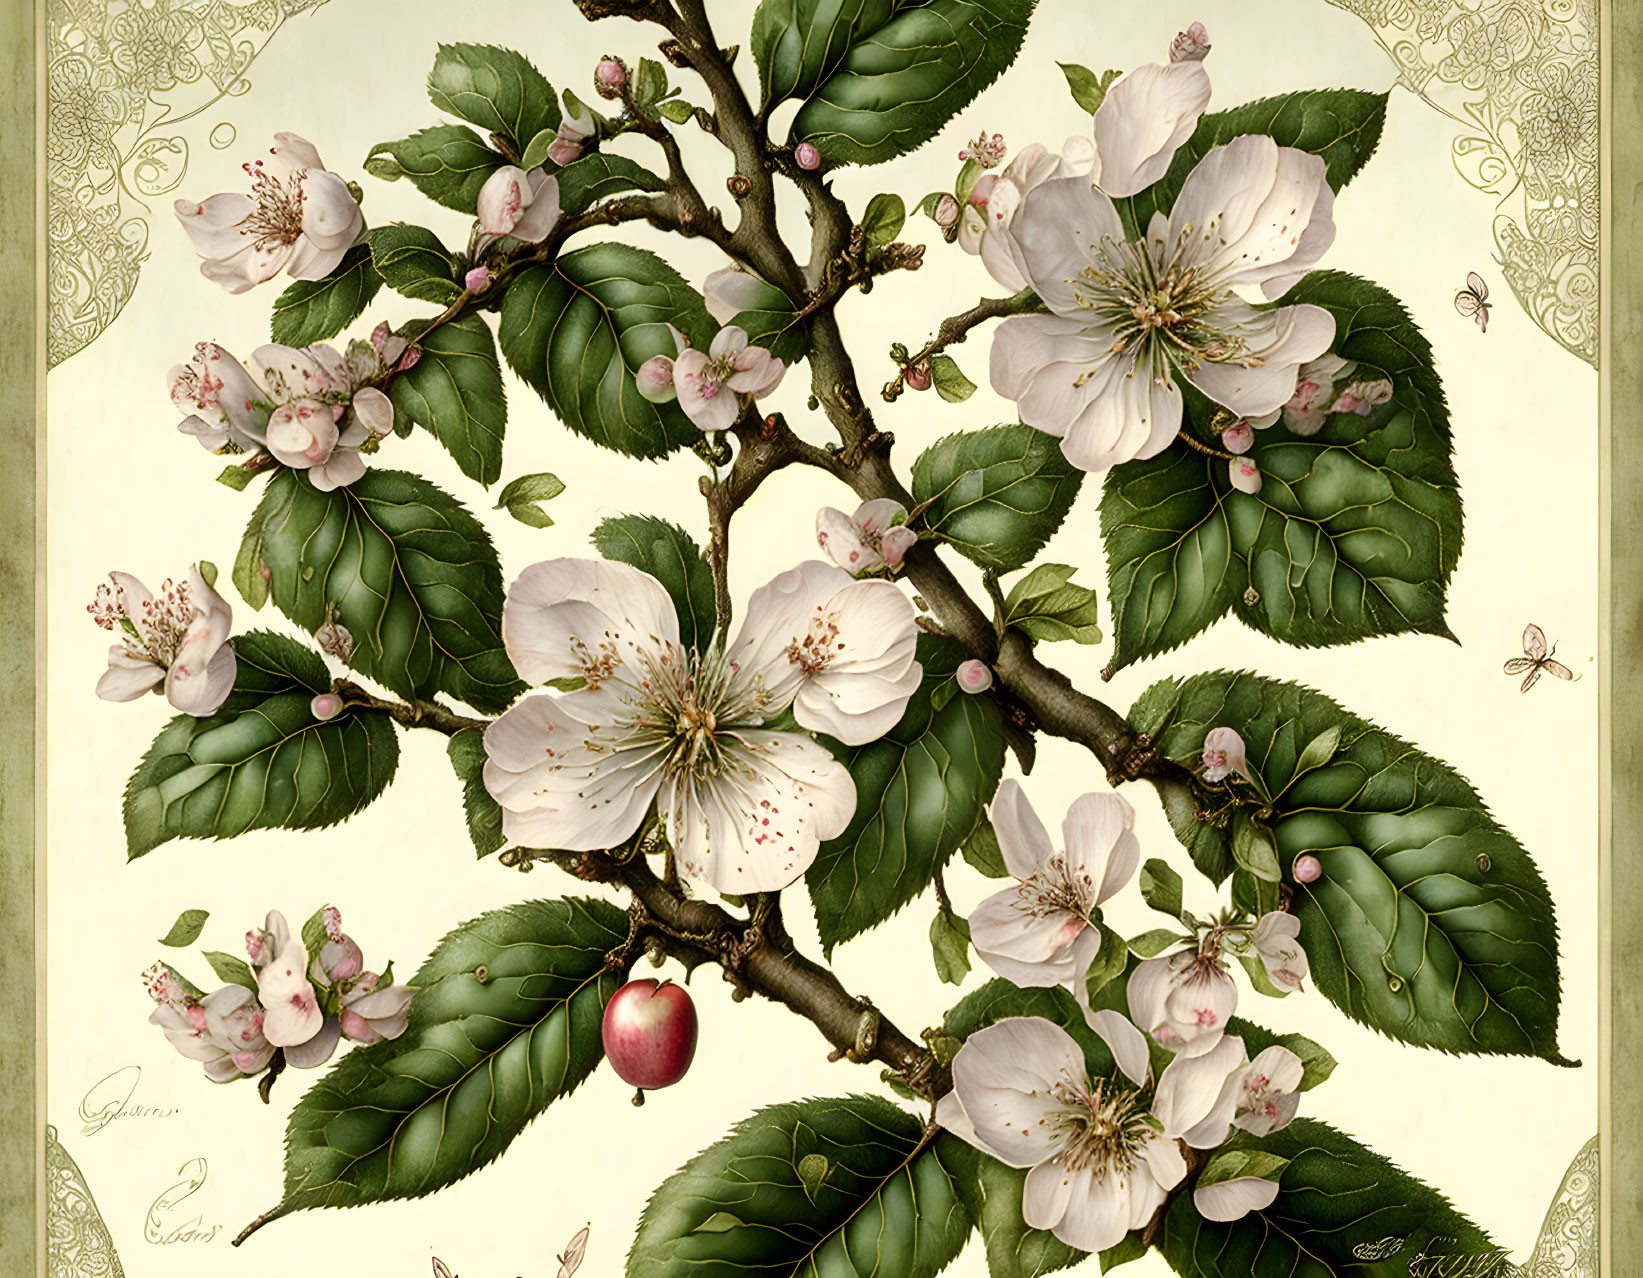 Detailed Vintage Botanical Illustration of Apple Tree Branch in Bloom